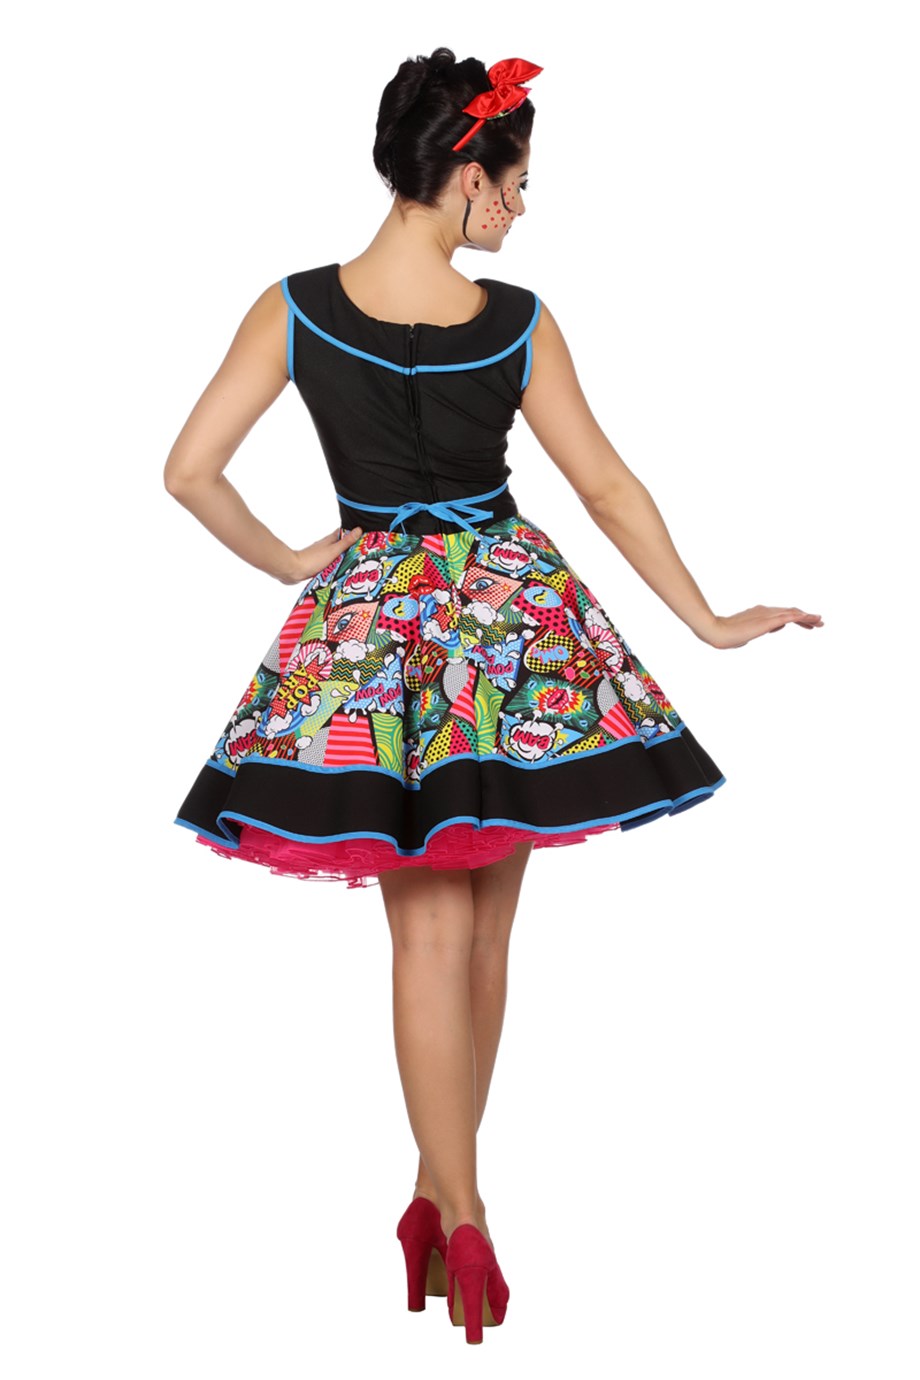 Damen Kleid Kostüm Pop Art - 38 - 56 - 50er Jahre Fasching Damenkleid